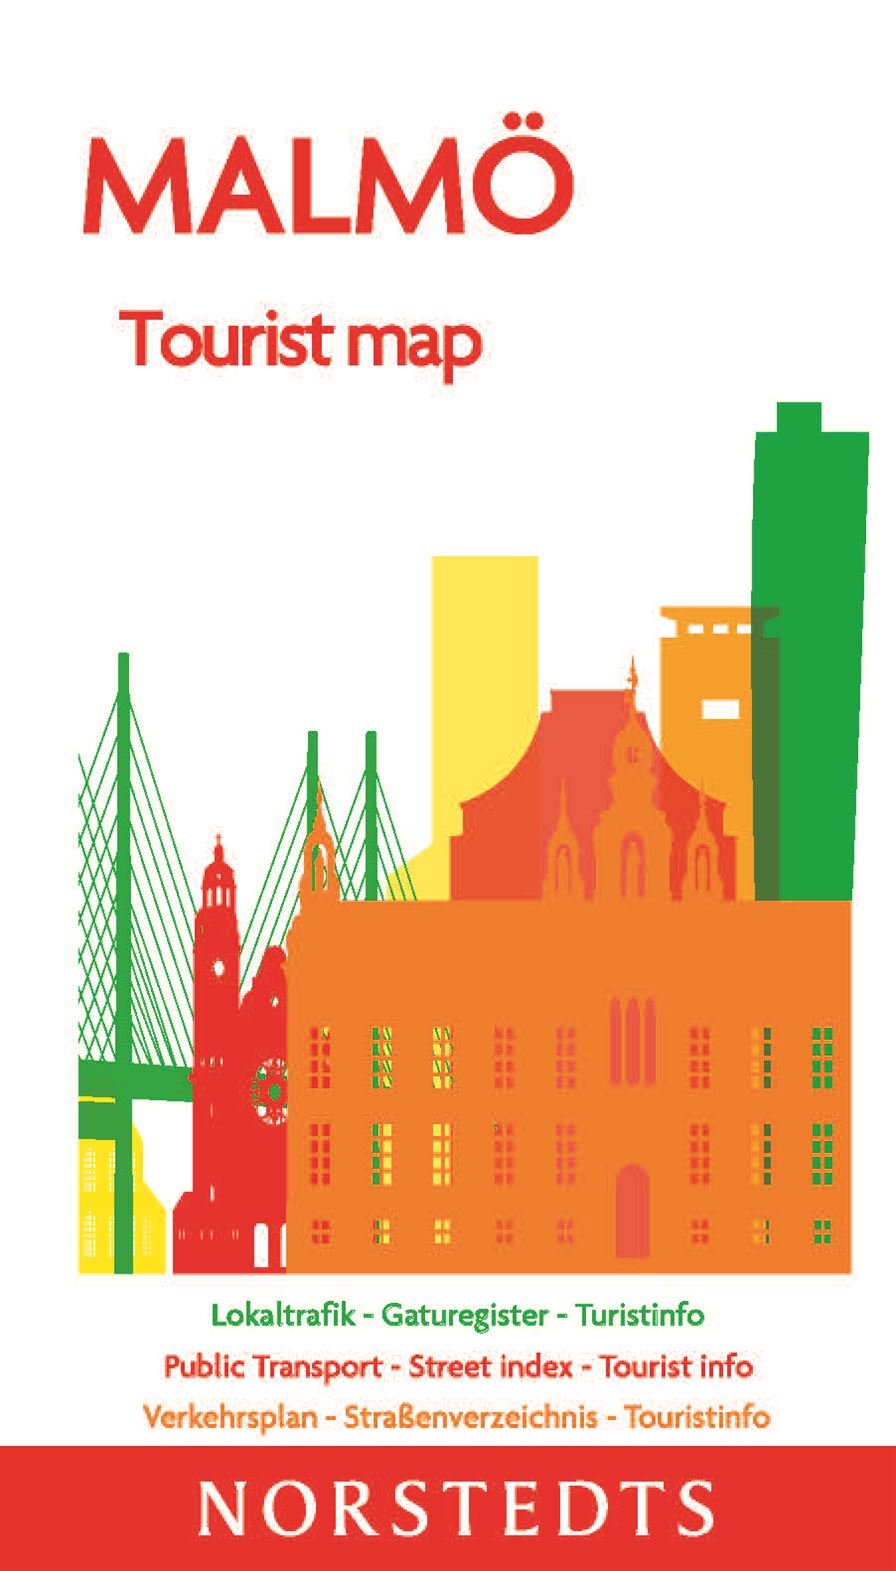 Malmö Tourist map